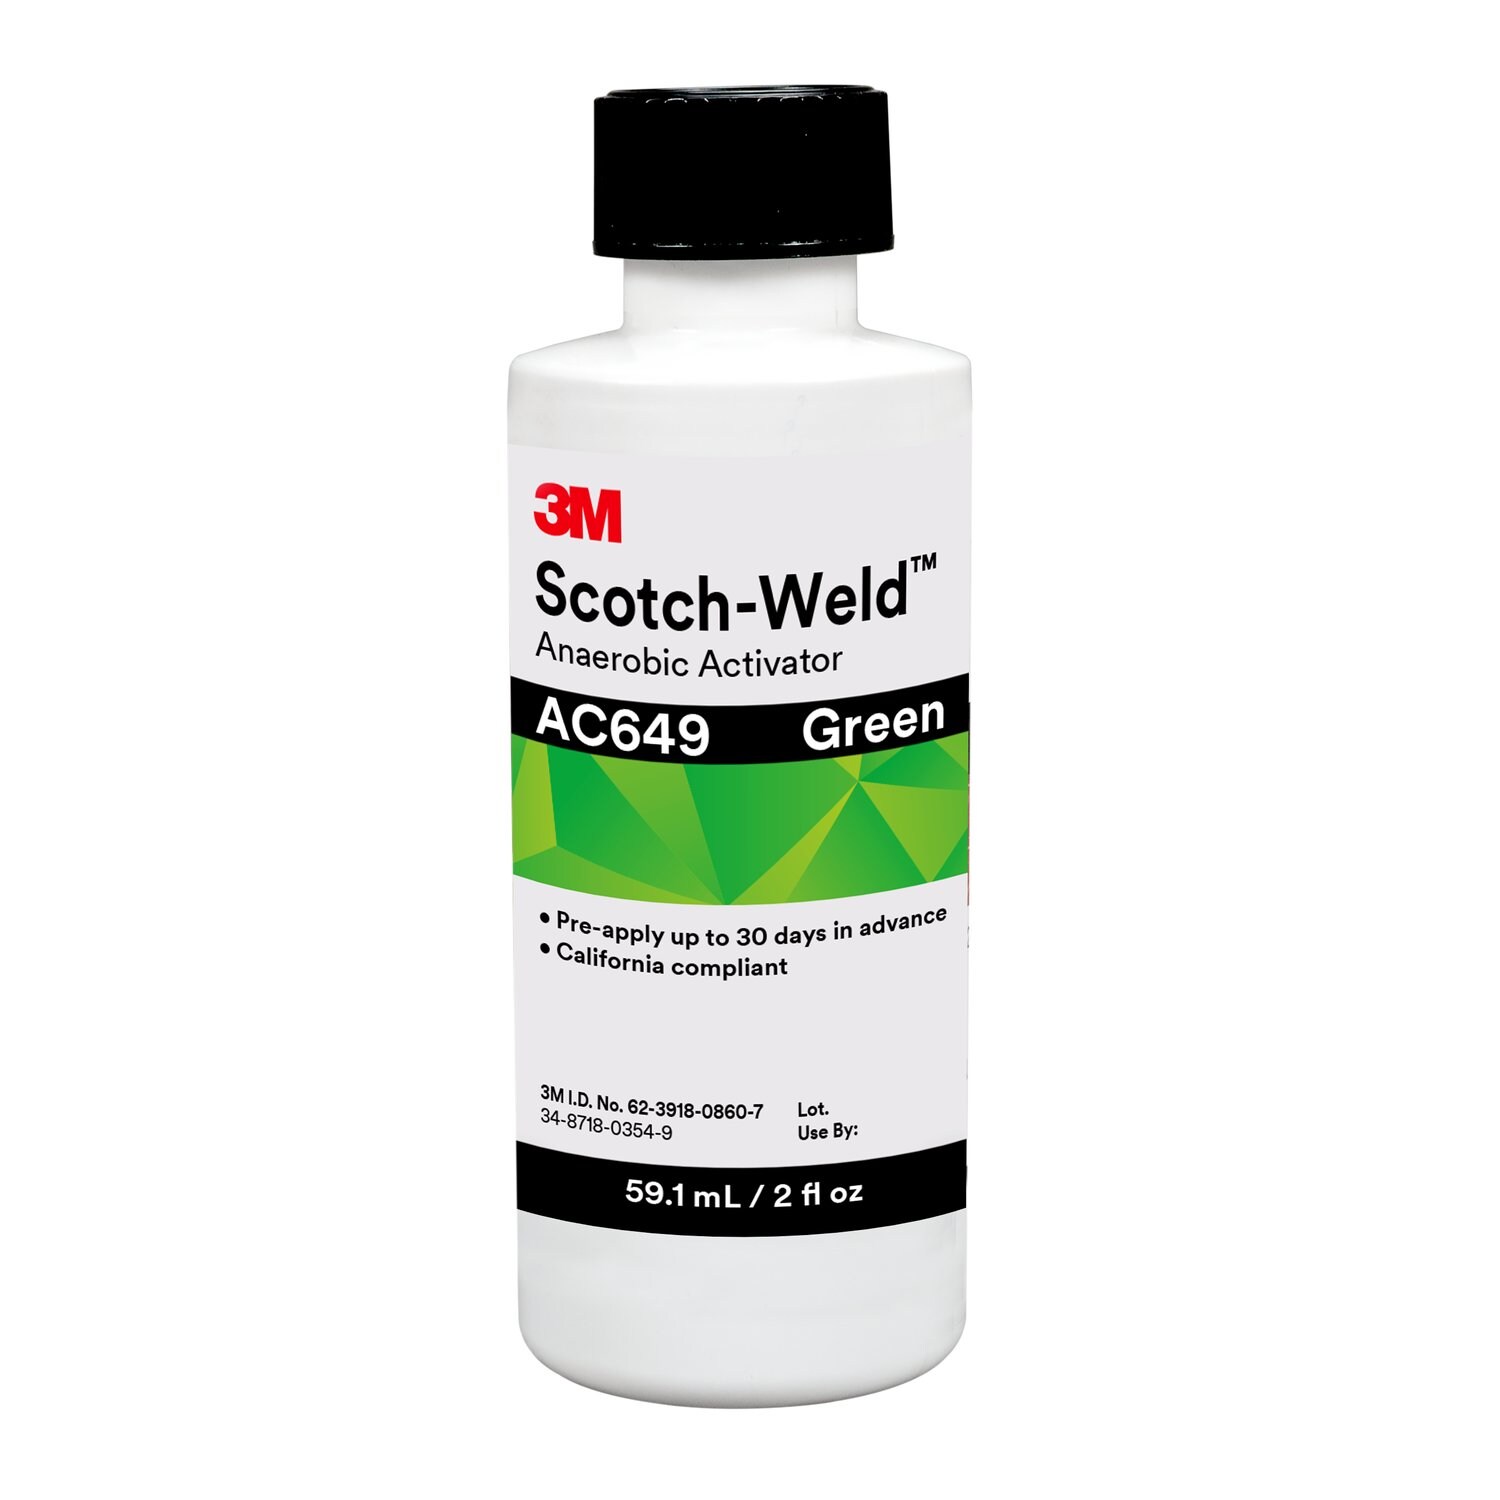 7100075275 - 3M Scotch-Weld Anaerobic Activator AC649, Green, 2 fl oz Bottle,
10/case